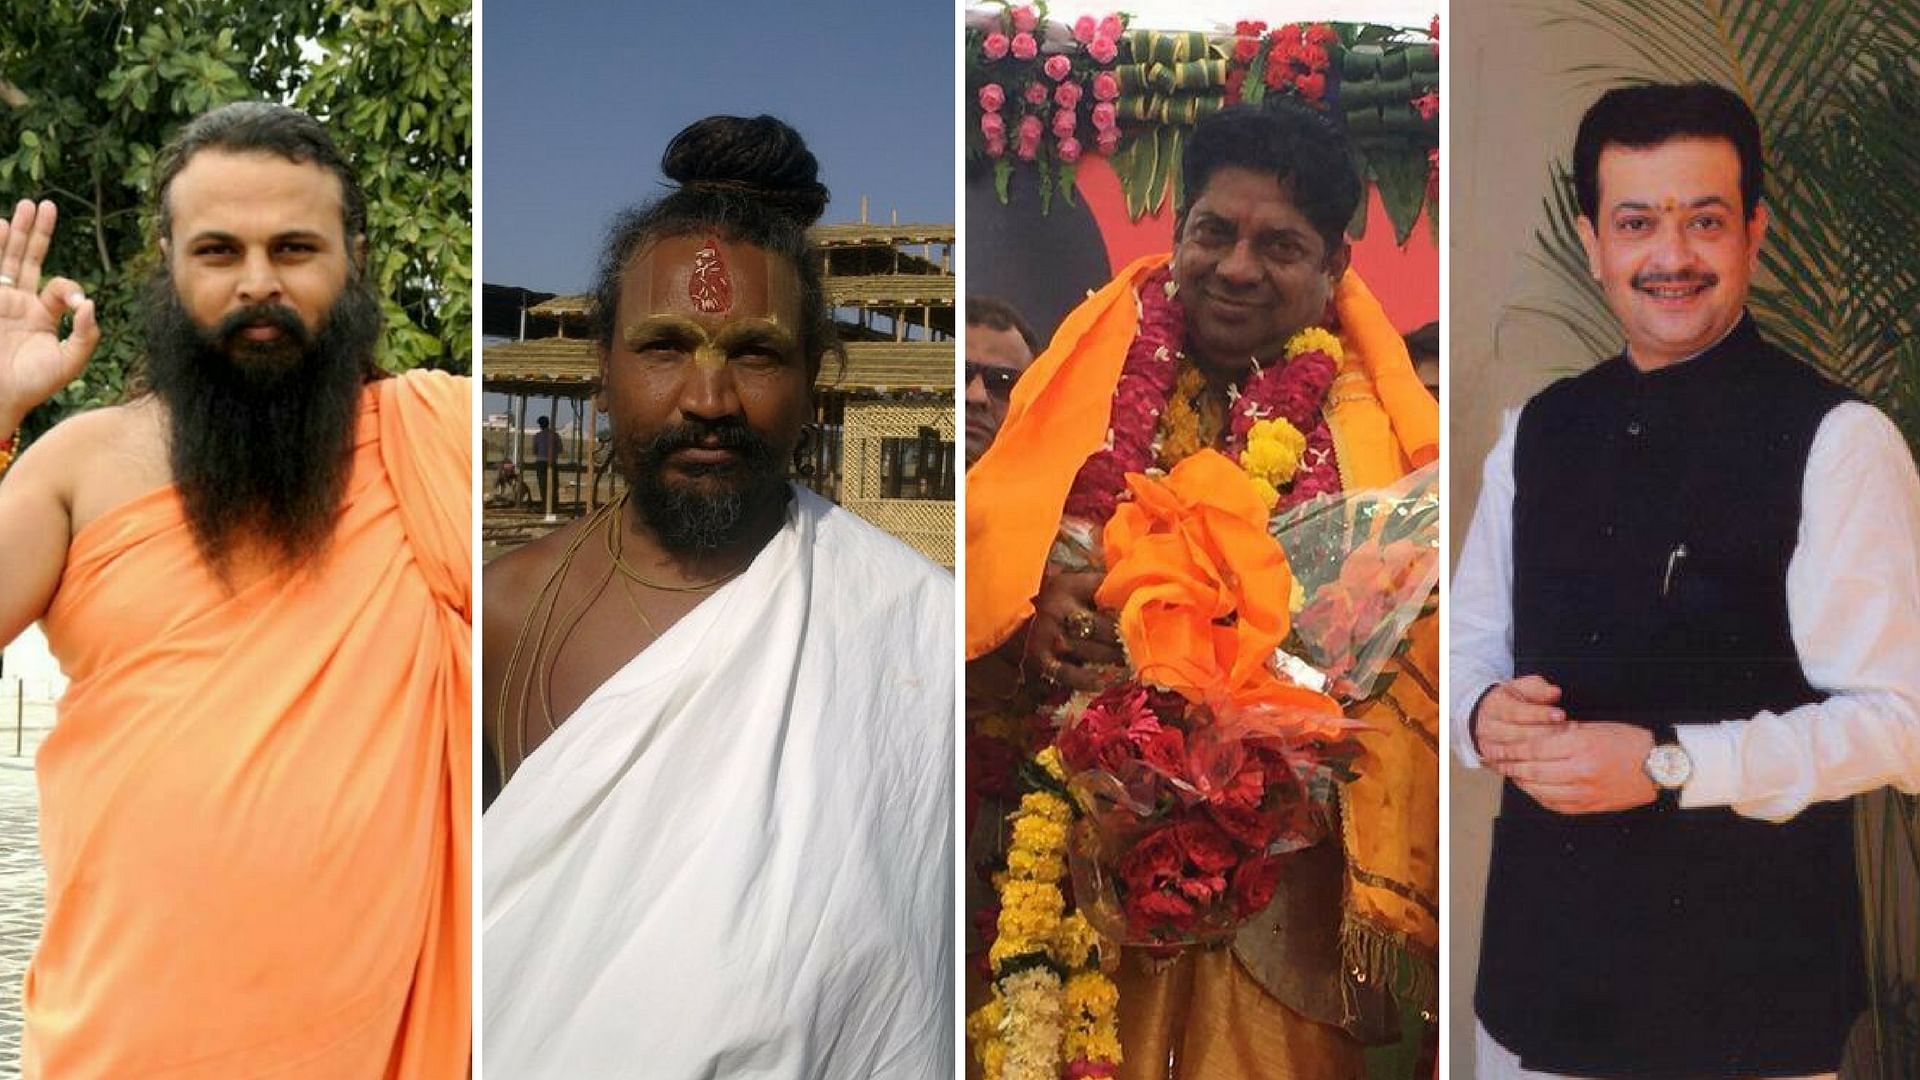 The status of MoS has been accorded to Narmadanand Maharaj, Hariharanand Maharaj, Computer Baba, Bhaiyyu Maharaj and Pandit Yogendra Mahant.